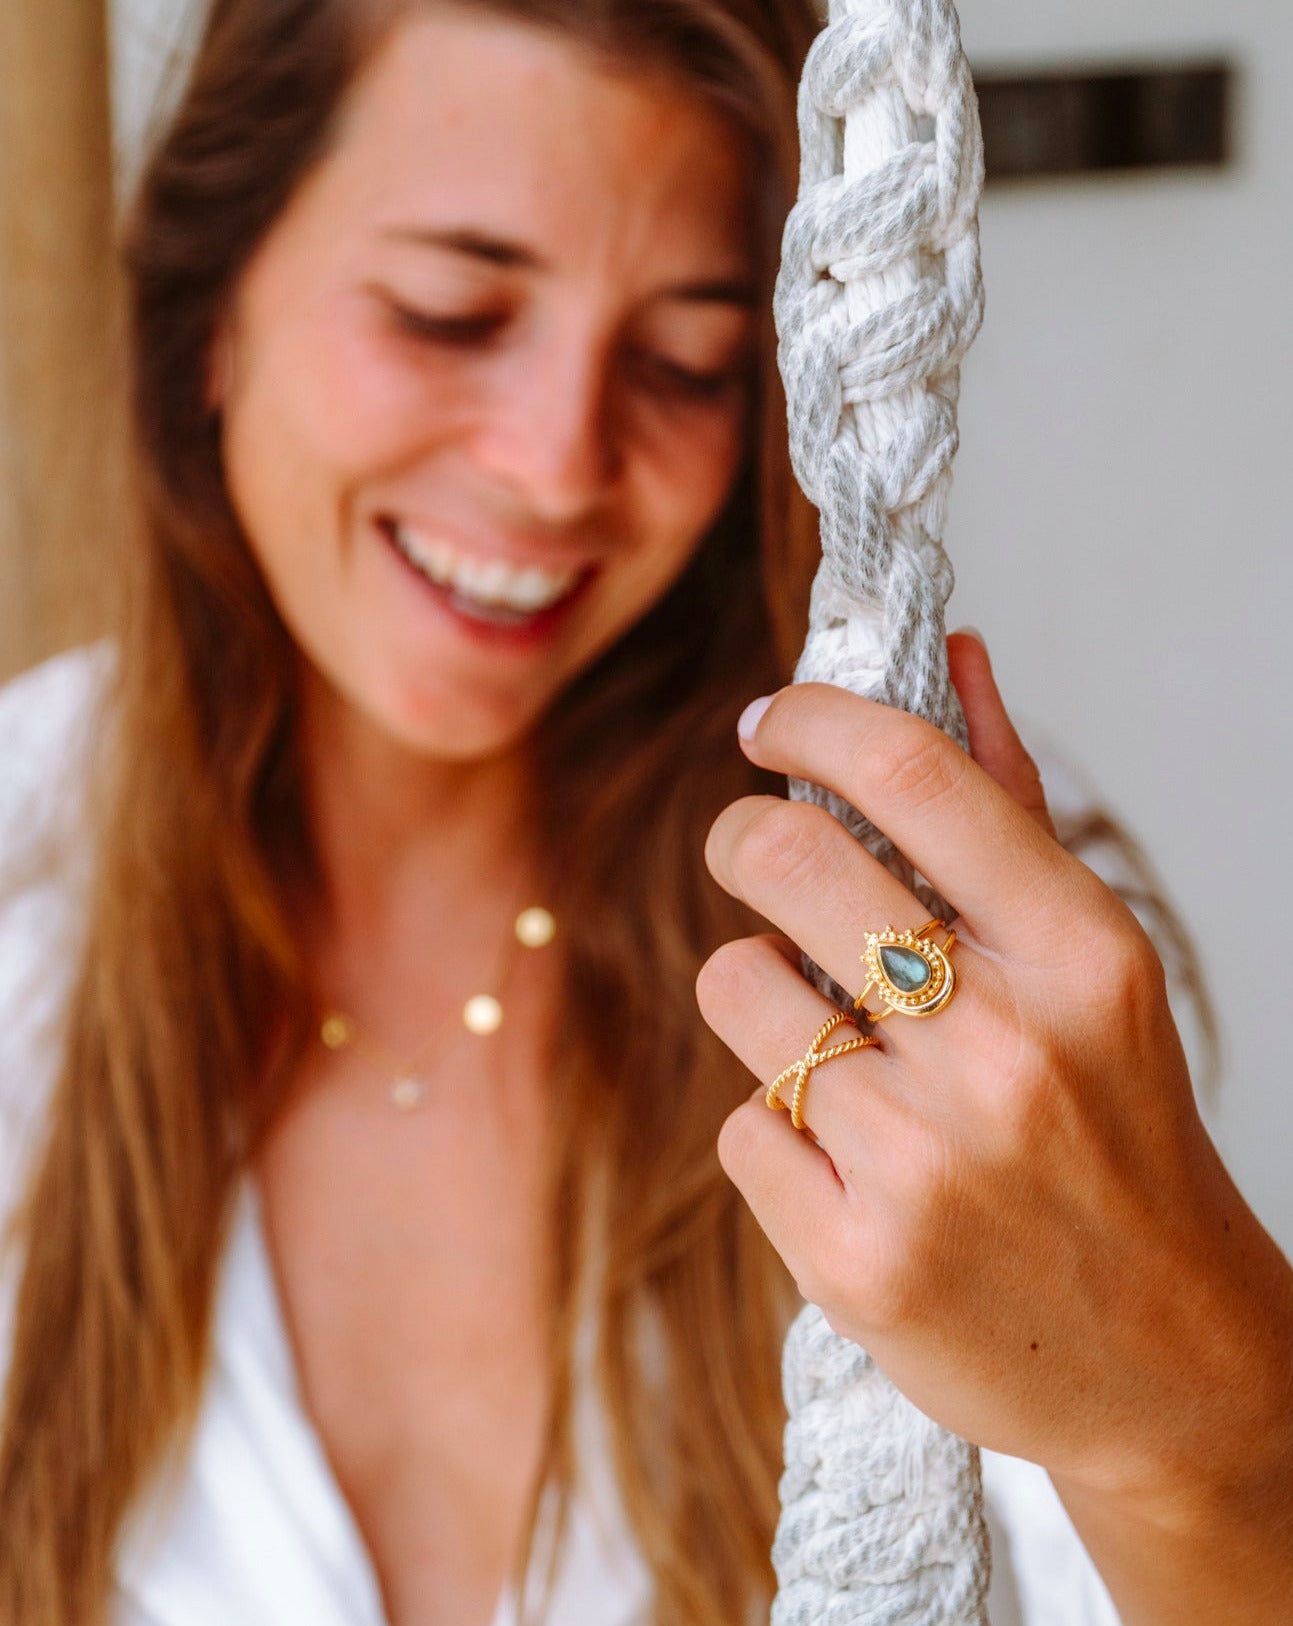 Handmade with love | VERLAN Jewellery | Fairfashion | Handgemachte Ringe im Boho Look aus Bali | Fair und nachhaltig handgefertigter Schmuck | Verstellbarer Ring | Kombi & adjustable Ring | vergoldet | pandawa ring